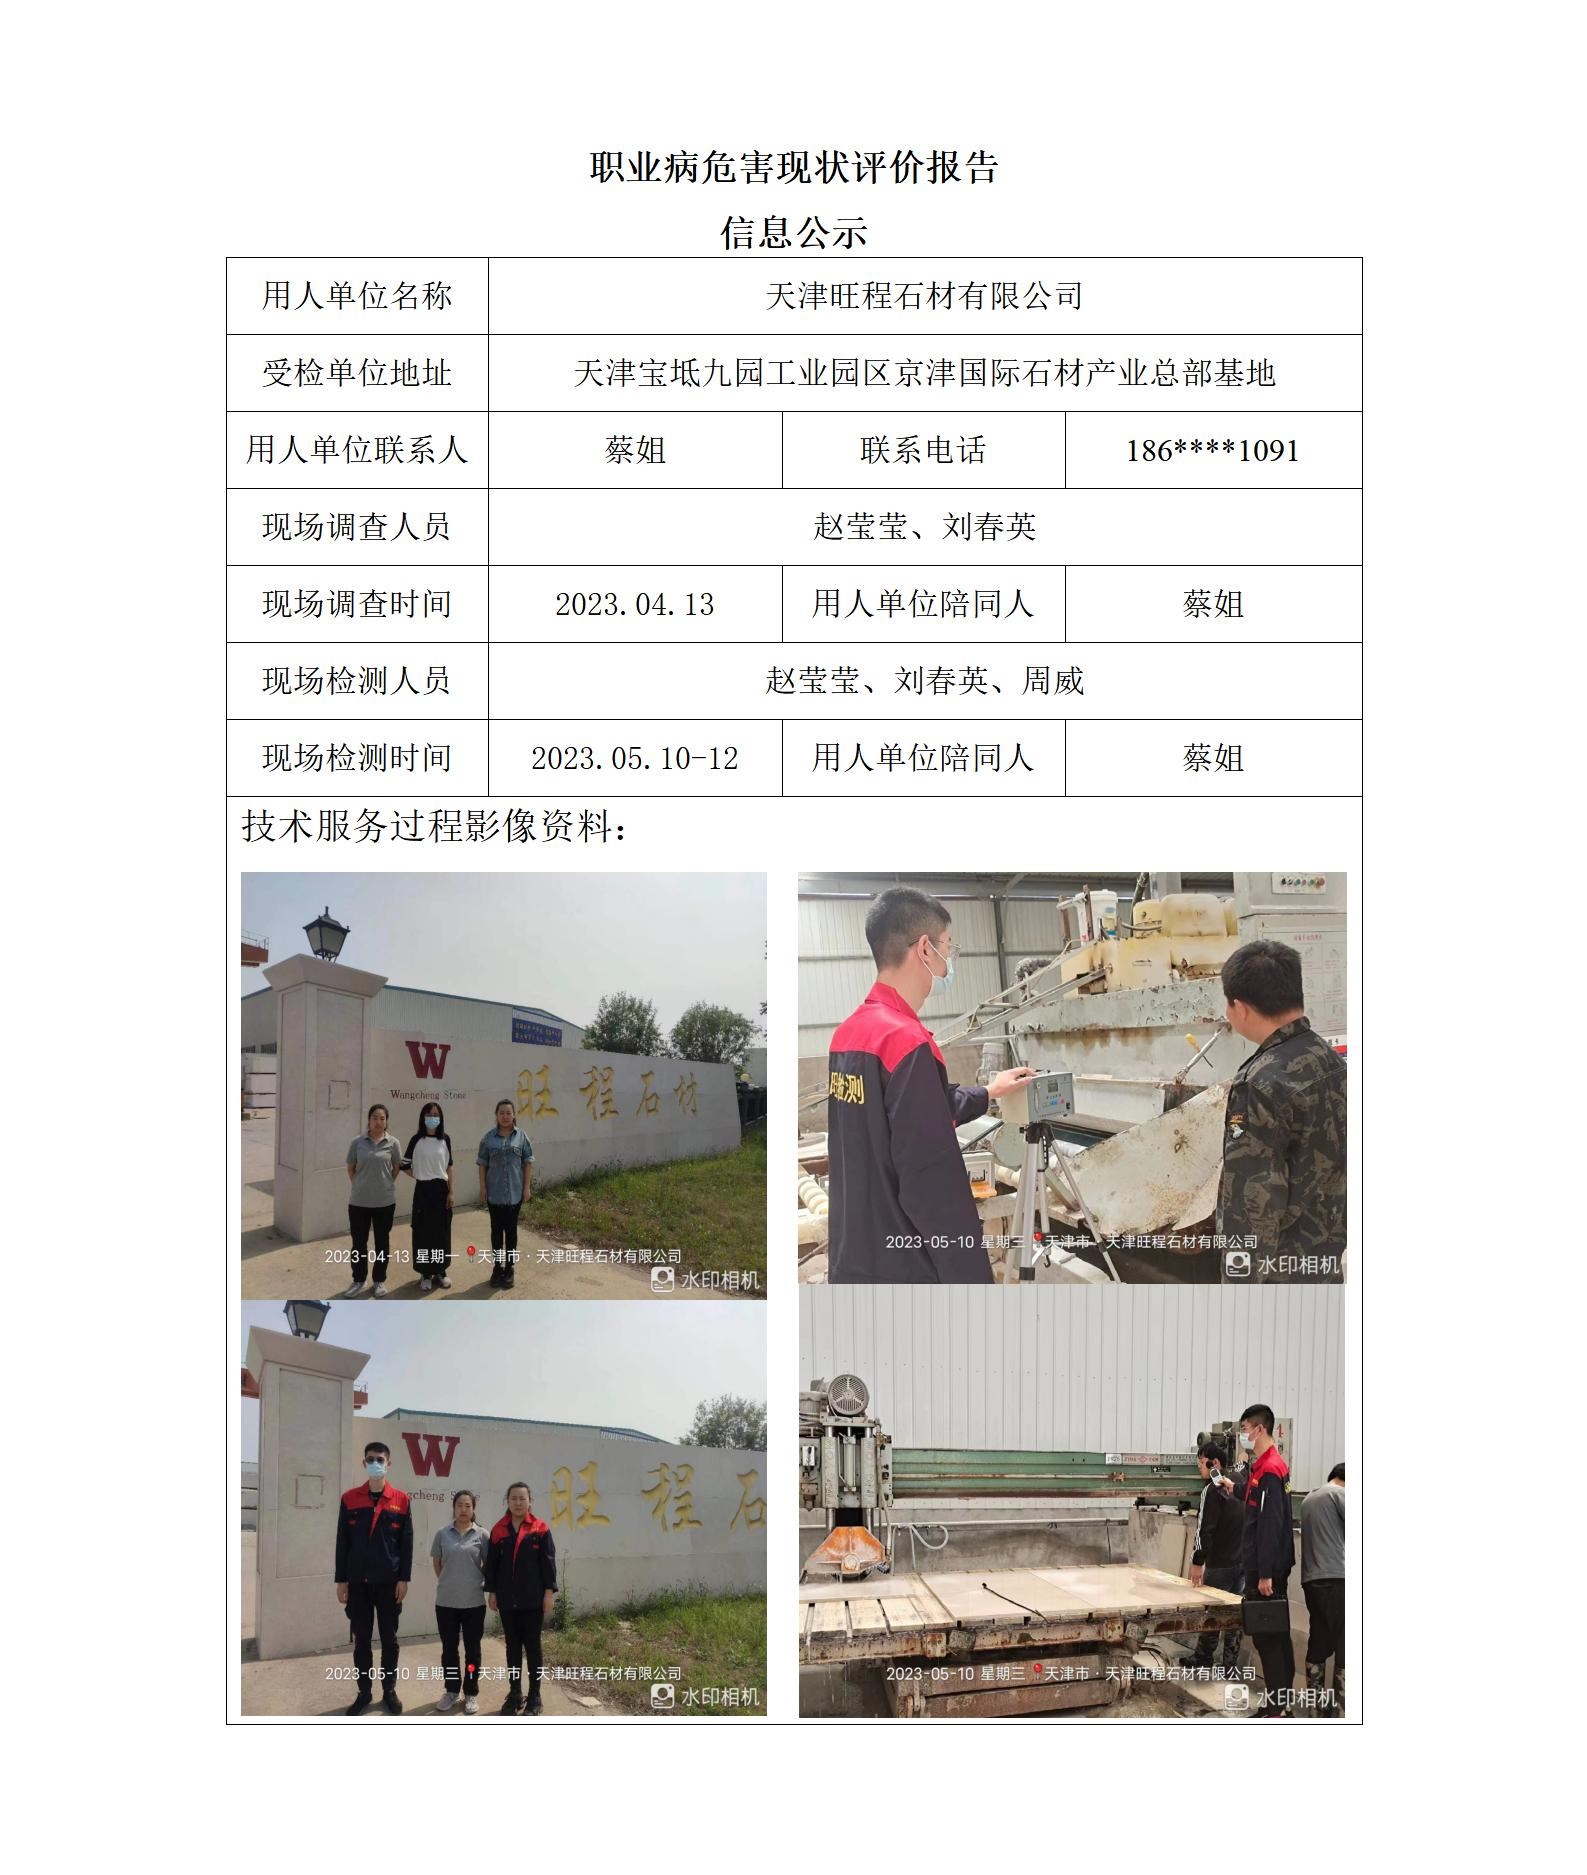 2023.11.24 天津旺程石材有限公司 职业病危害因素检测与评价报告信息公示_01.jpg